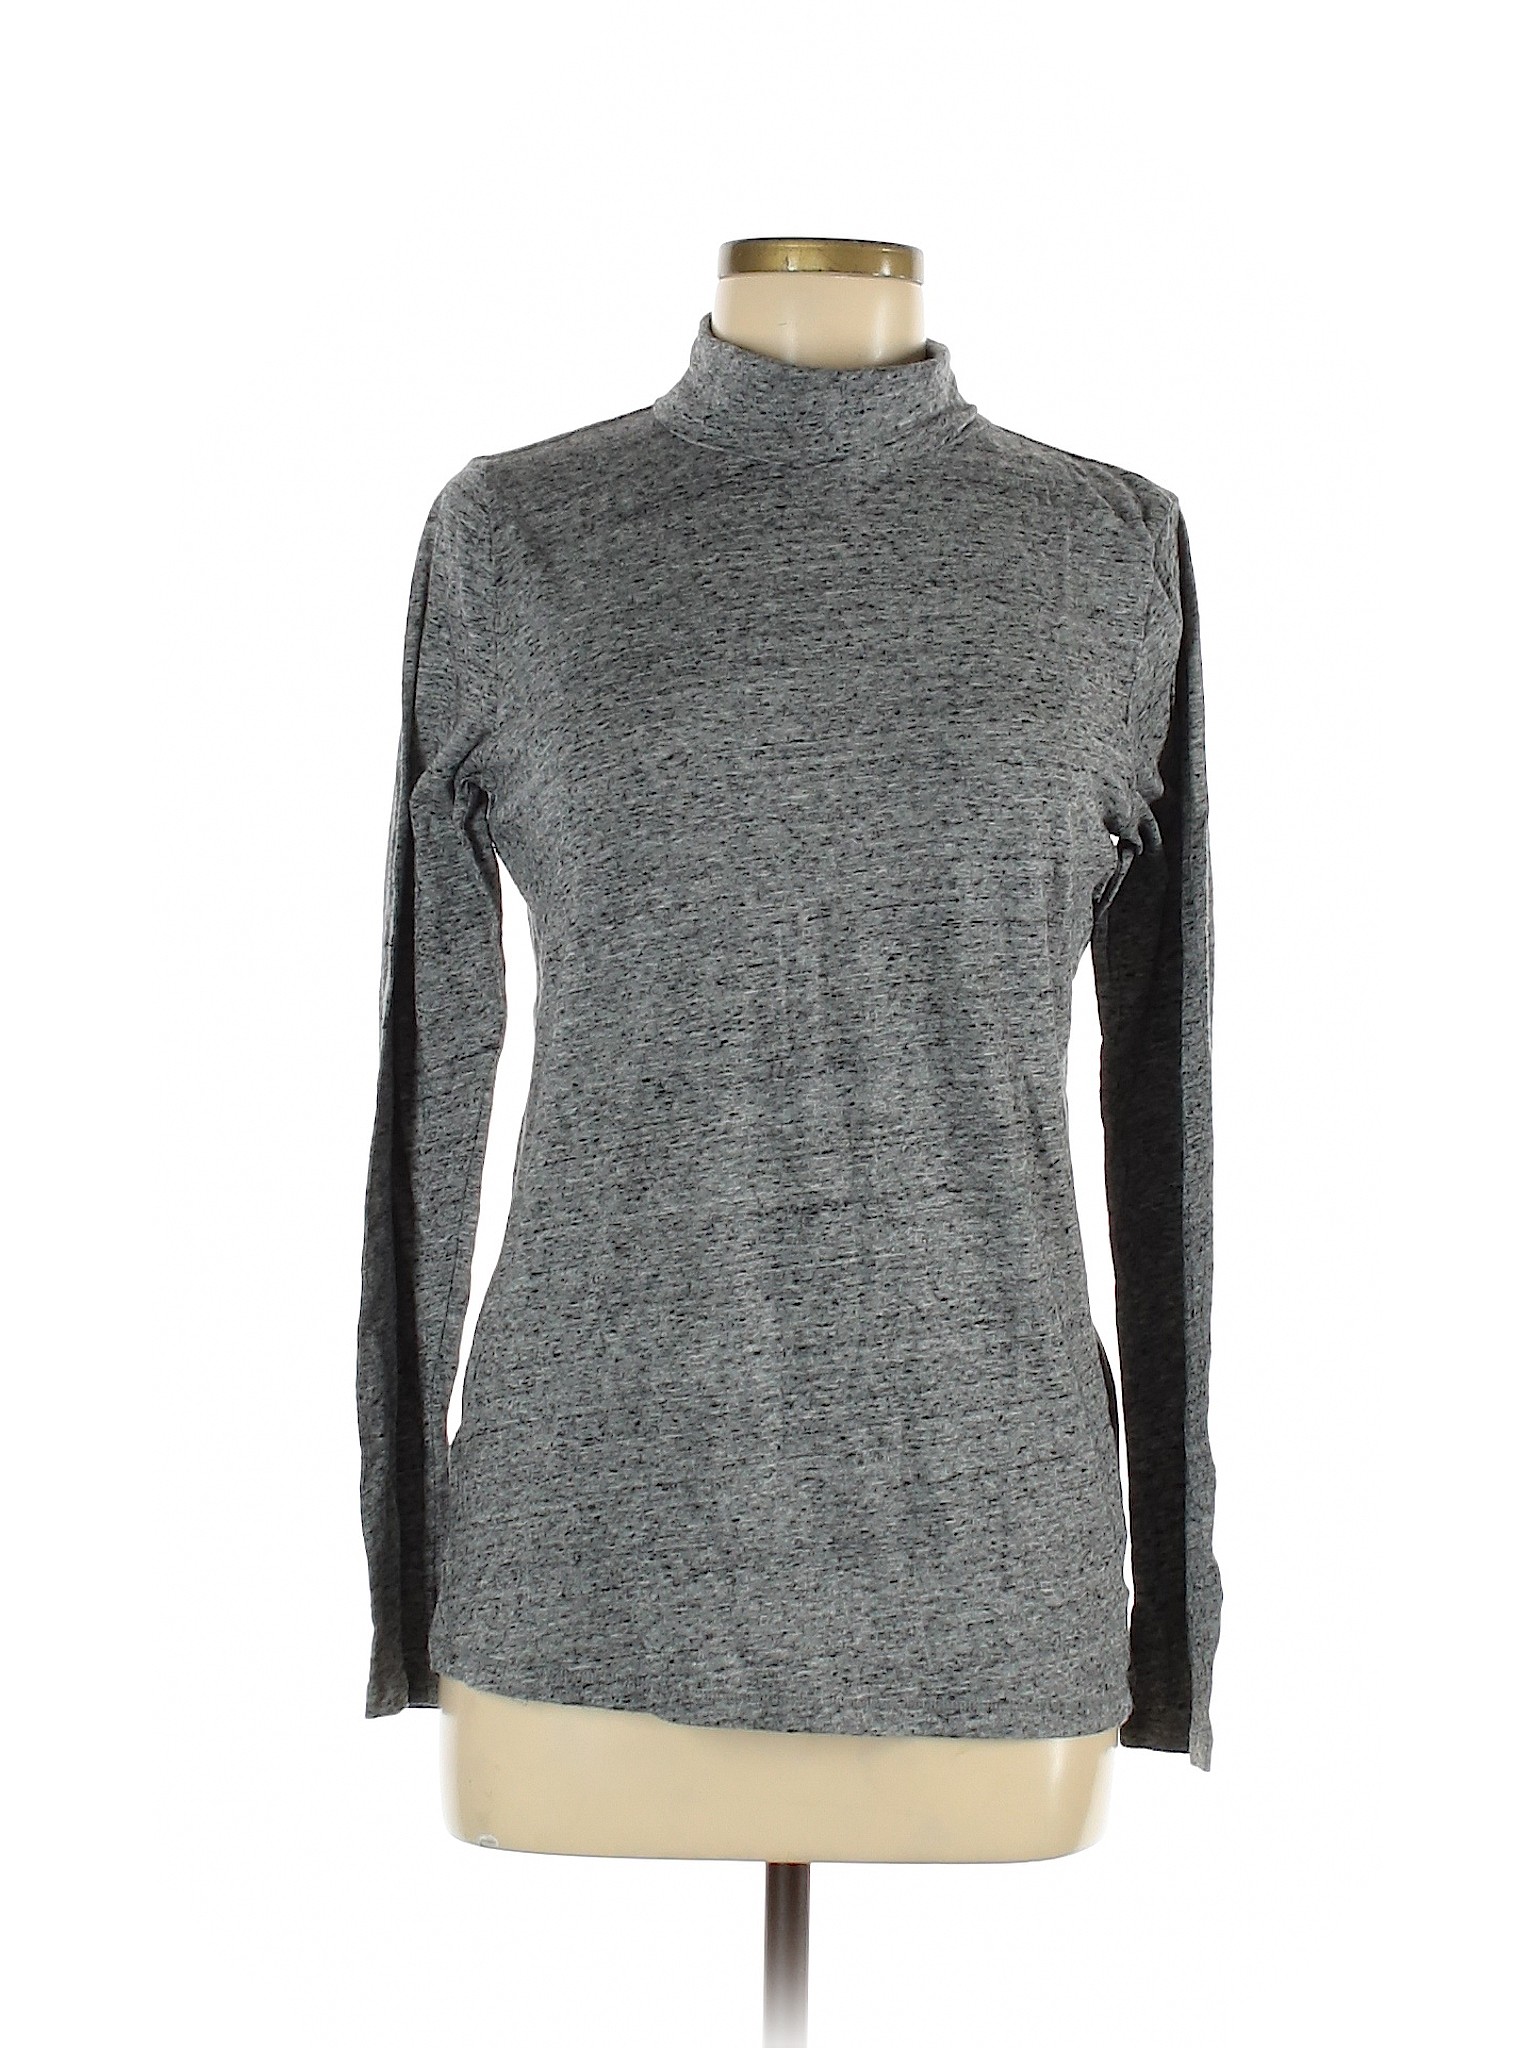 Gap Women Gray Long Sleeve Turtleneck L | eBay